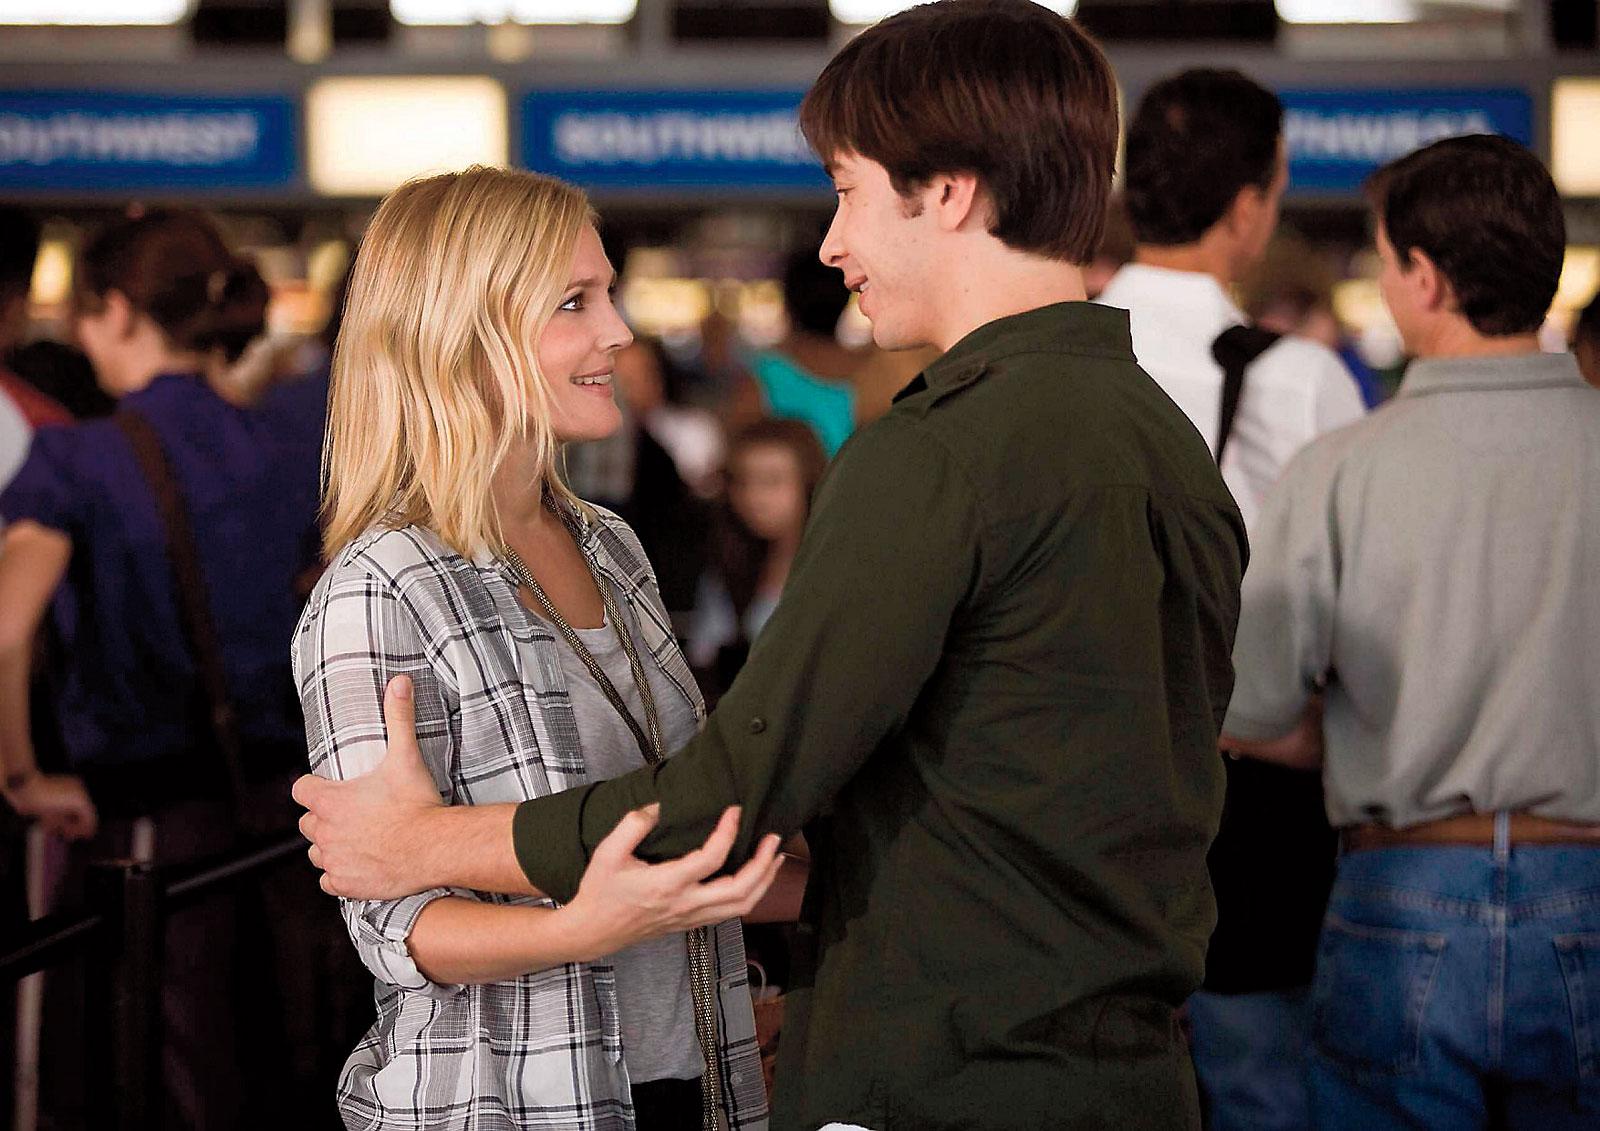 I filmen ”Going the distance”, som hade svensk premiär i fredags, spelar Drew Barrymore mot sin ex-kille, Justin Long.